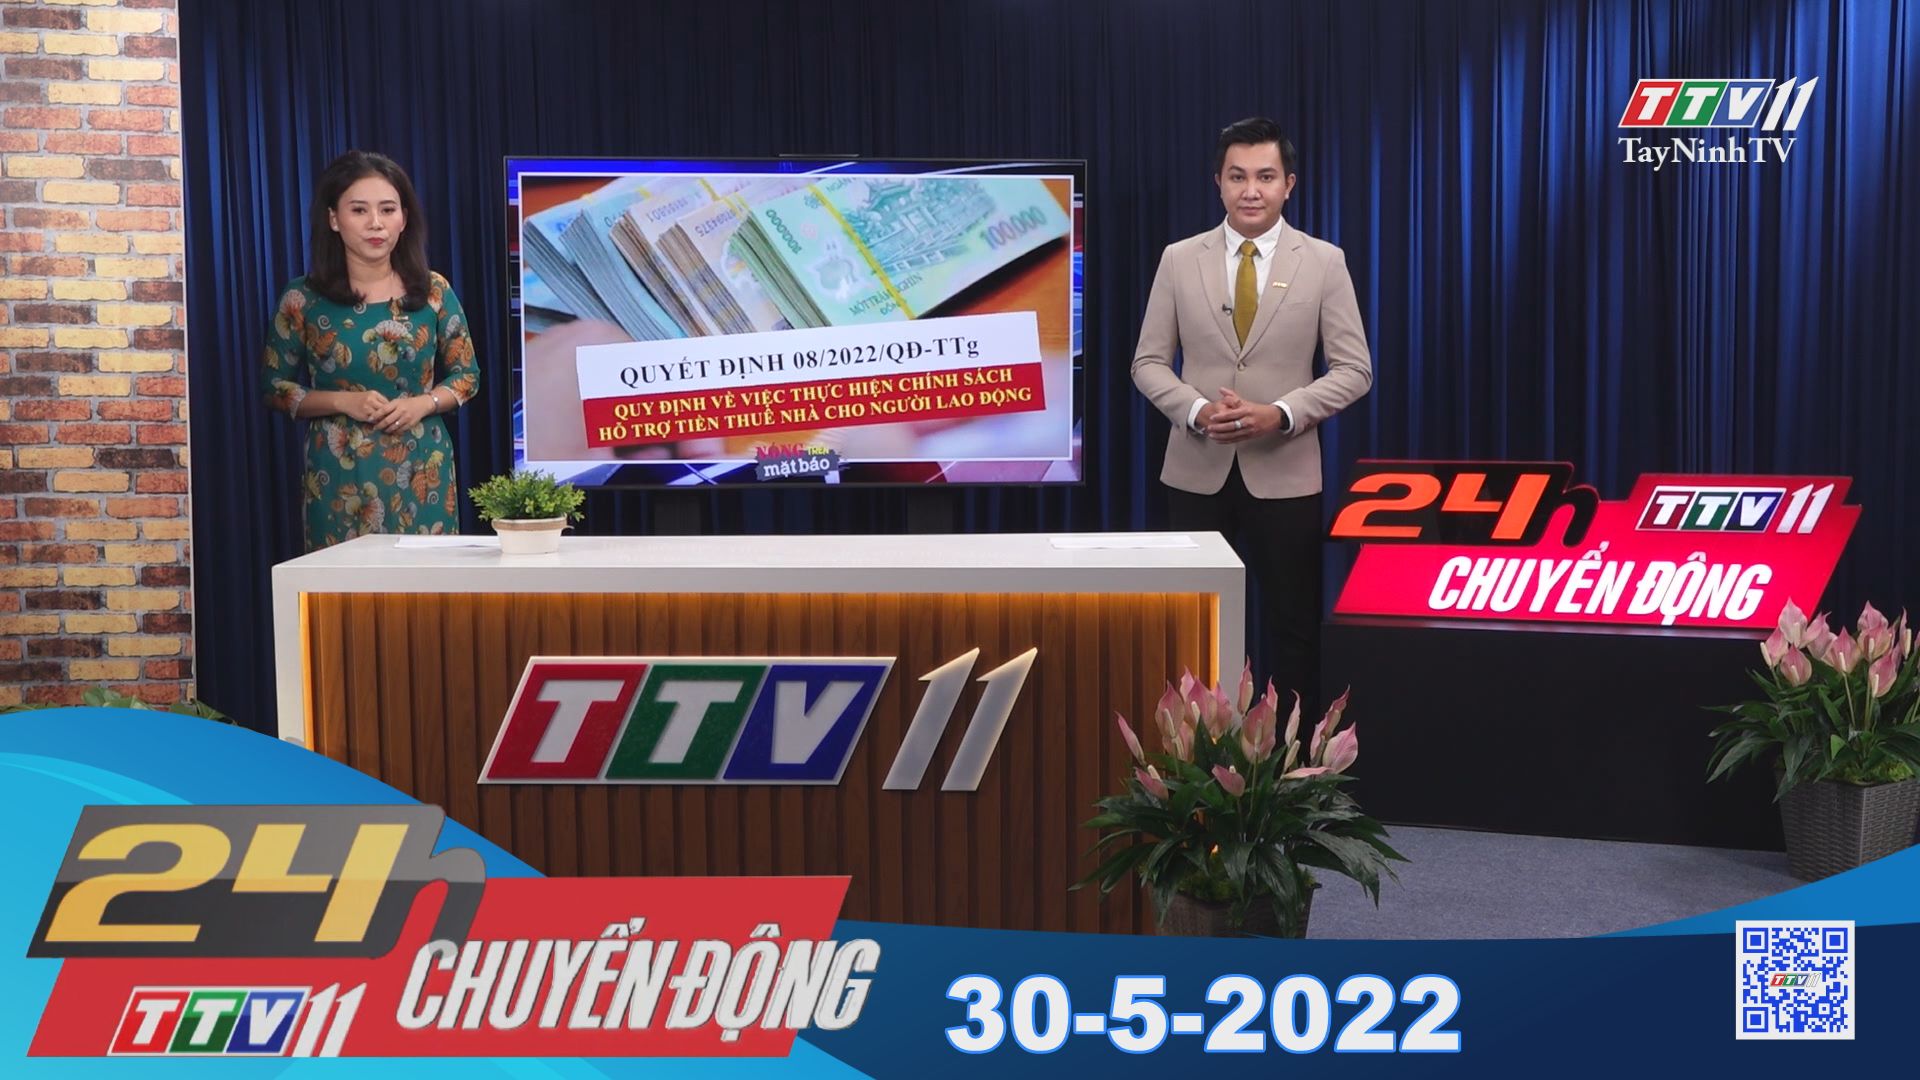 24h Chuyển động 30-5-2022 | Tin tức hôm nay | TayNinhTV